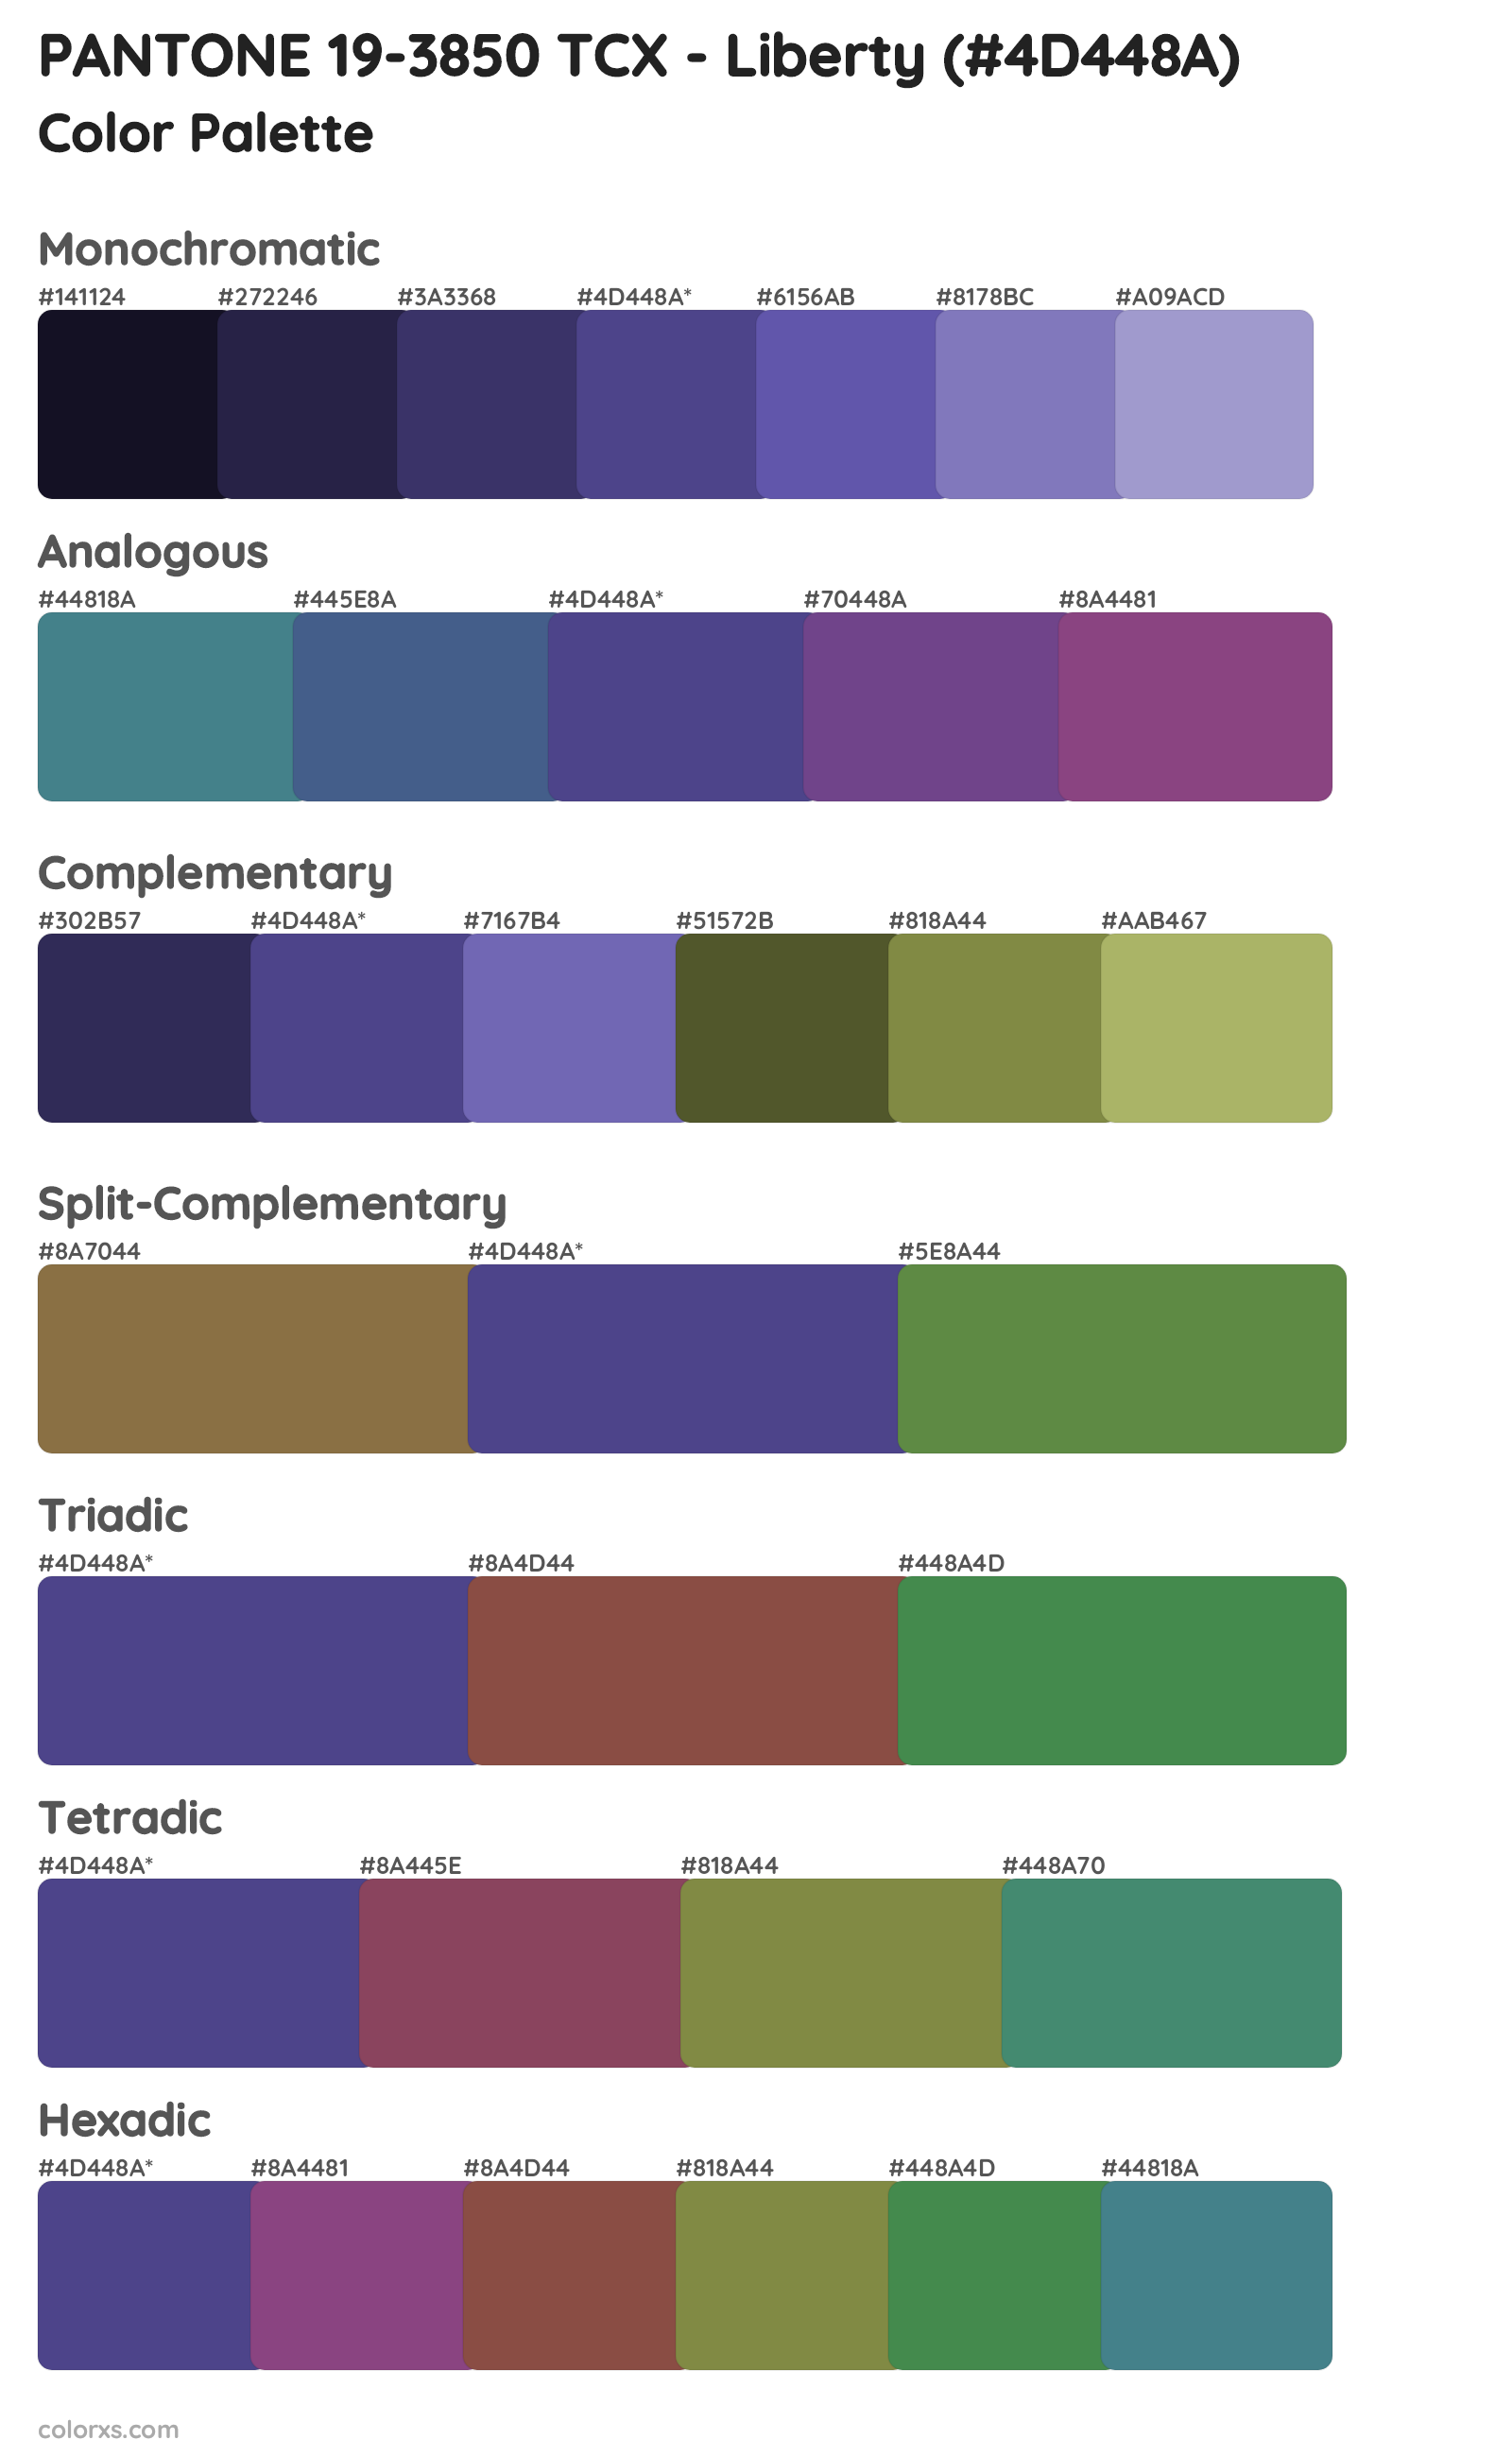 PANTONE 19-3850 TCX - Liberty Color Scheme Palettes